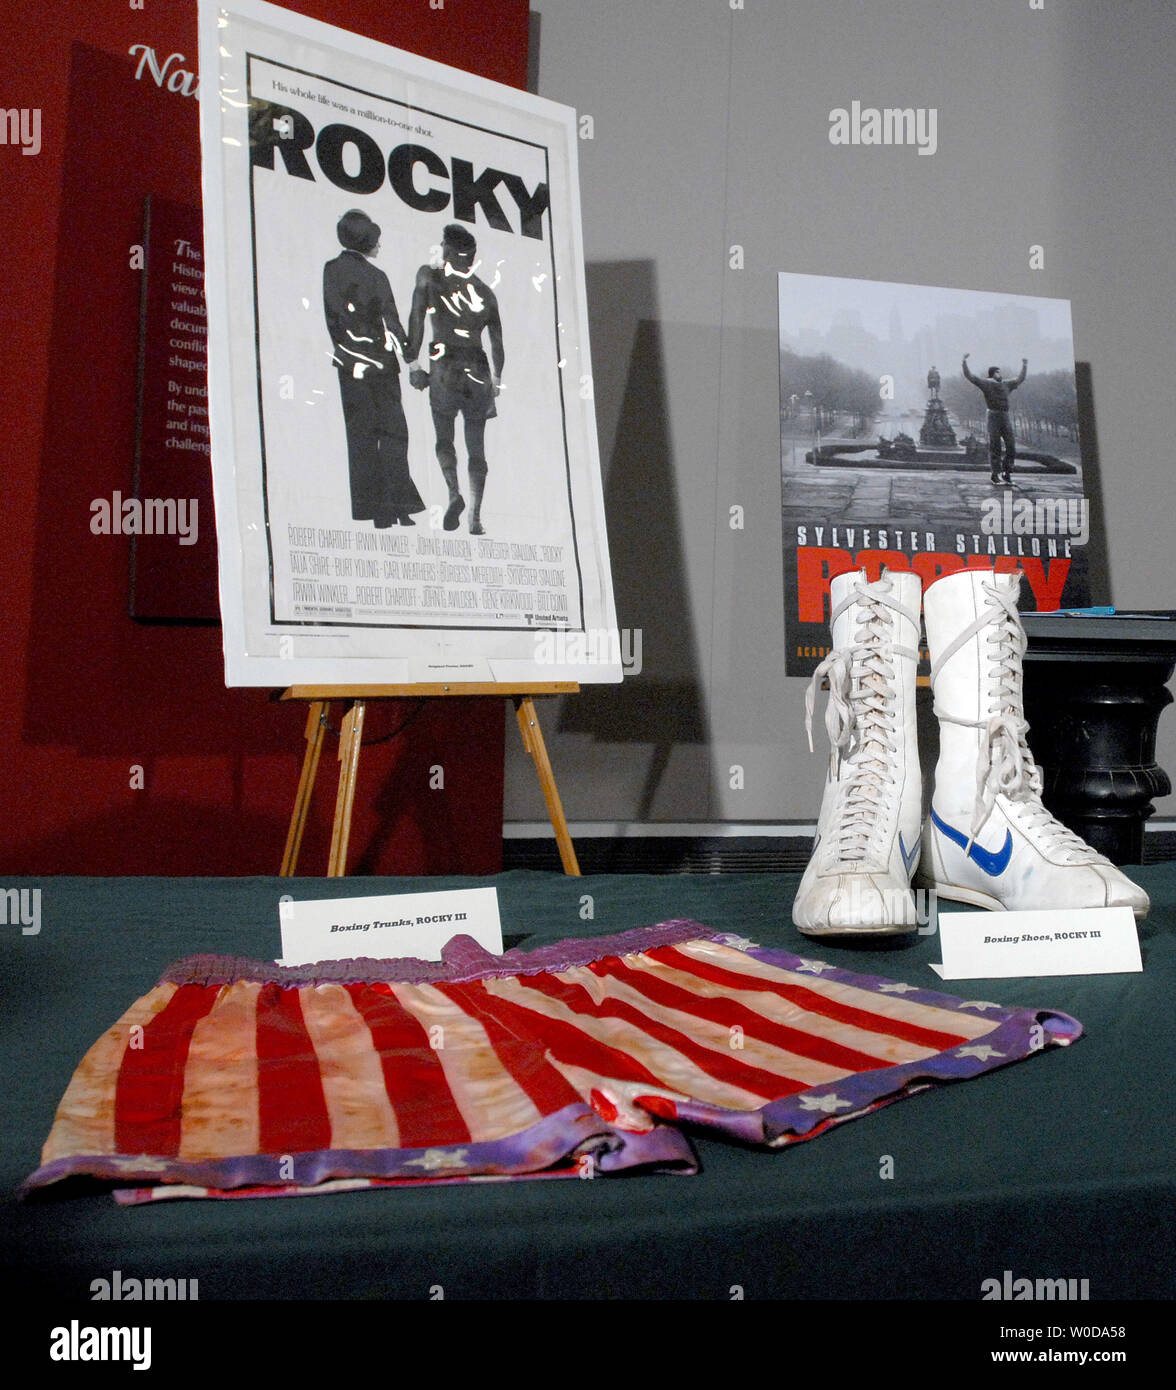 Le Smithsonian National Museum of American History tient une conférence de presse avec l'acteur et réalisateur Sylvester Stallone, qui fera don d'objets de l'Academy Award-winning 'Rocky' films le 5 décembre 2006 à Washington. Stallone a fait don de son short de boxe et démarre à partir de "Rocky III" entre autres. (Photo d'UPI/Roger L. Wollenberg) Banque D'Images